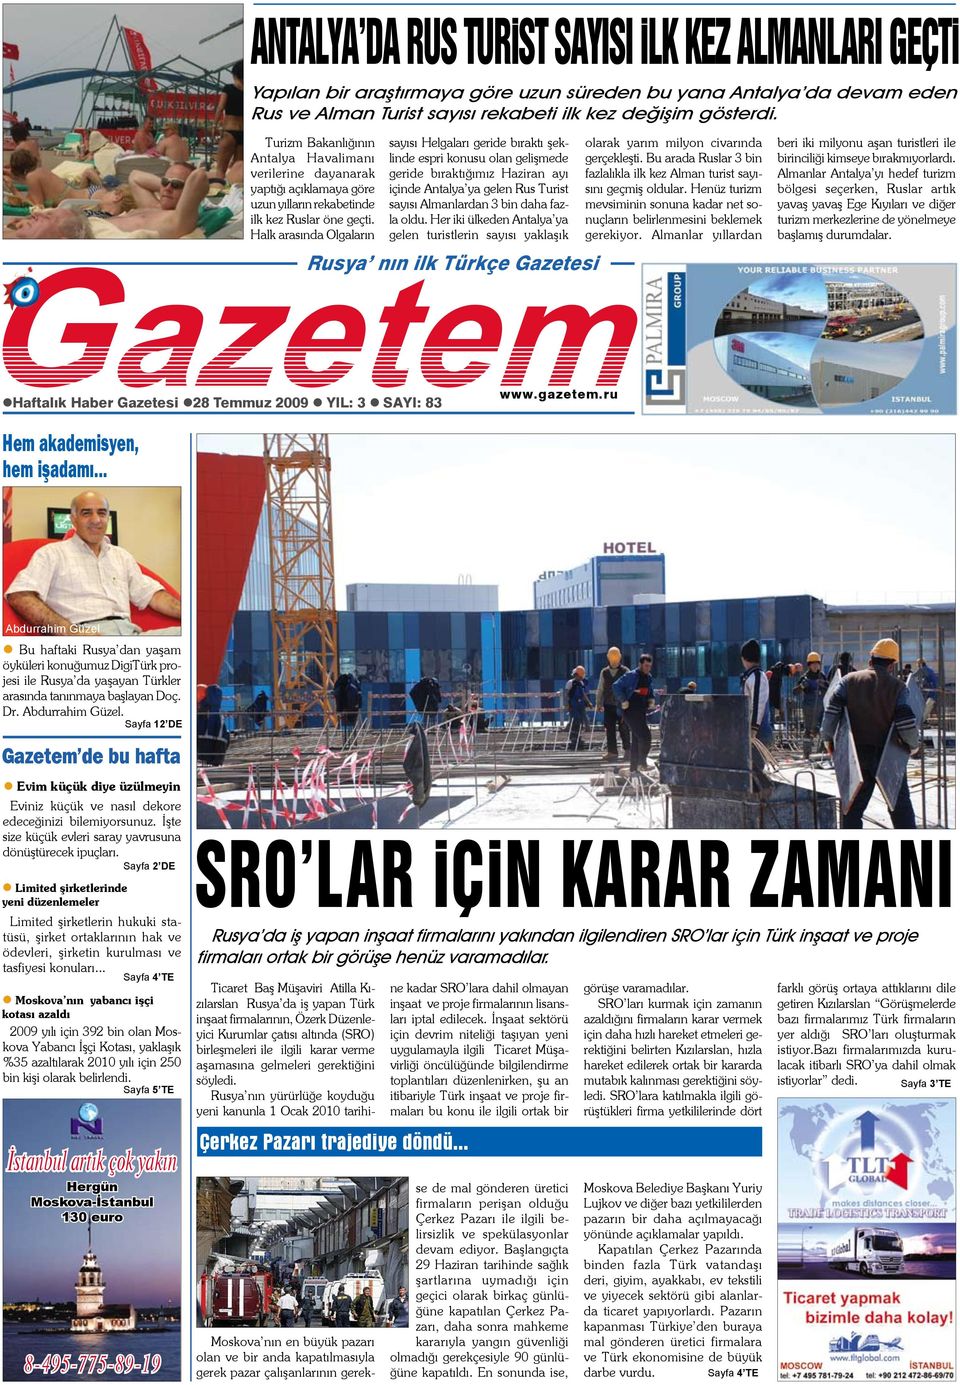 Halk arasında Olgaların Rusya nın ilk Türkçe Gazetesi Haftalık Haber Gazetesi 28 Temmuz 2009 YIL: 3 SAYI: 83 sayısı Helgaları geride bıraktı şeklinde espri konusu olan gelişmede geride bıraktığımız